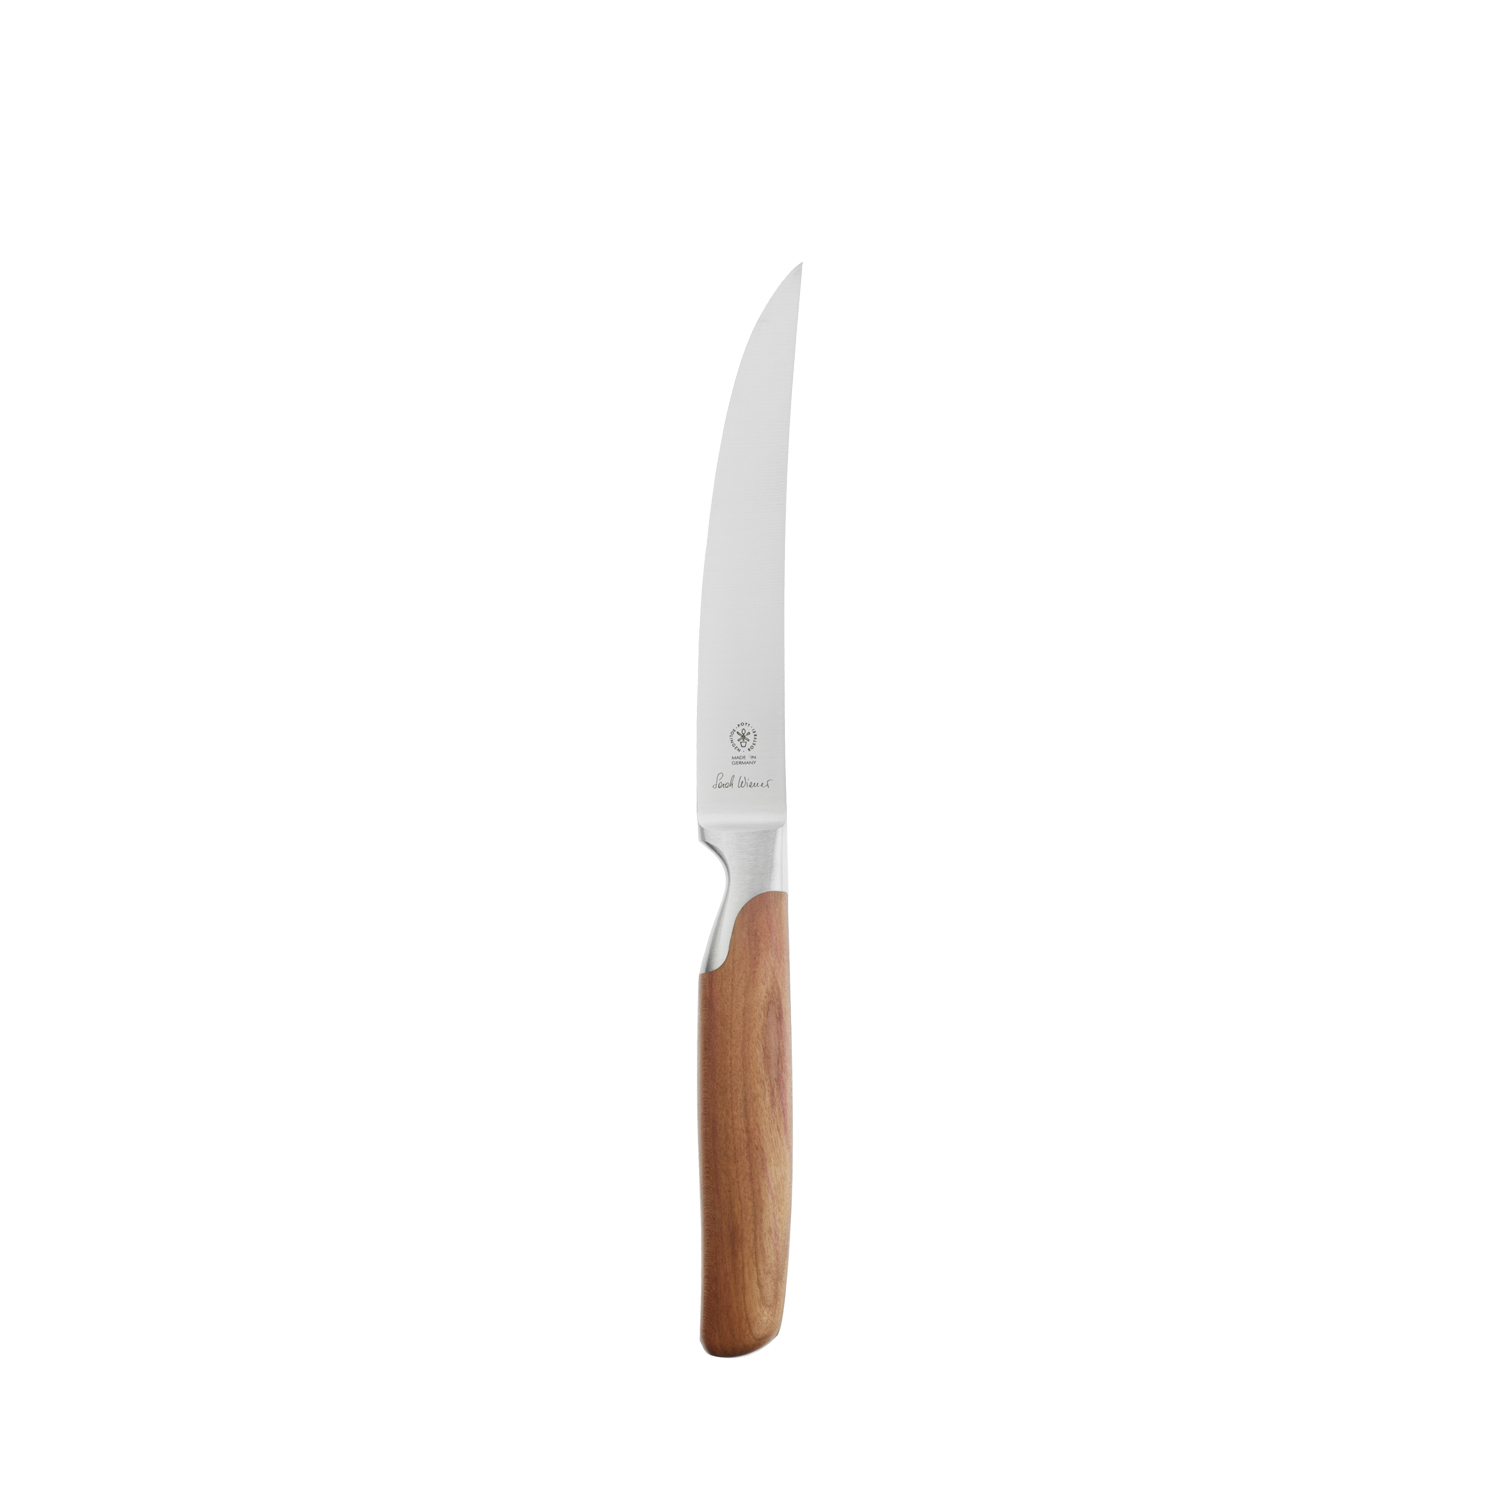 2810 227 Pott Sarah Wiener Messer Knives